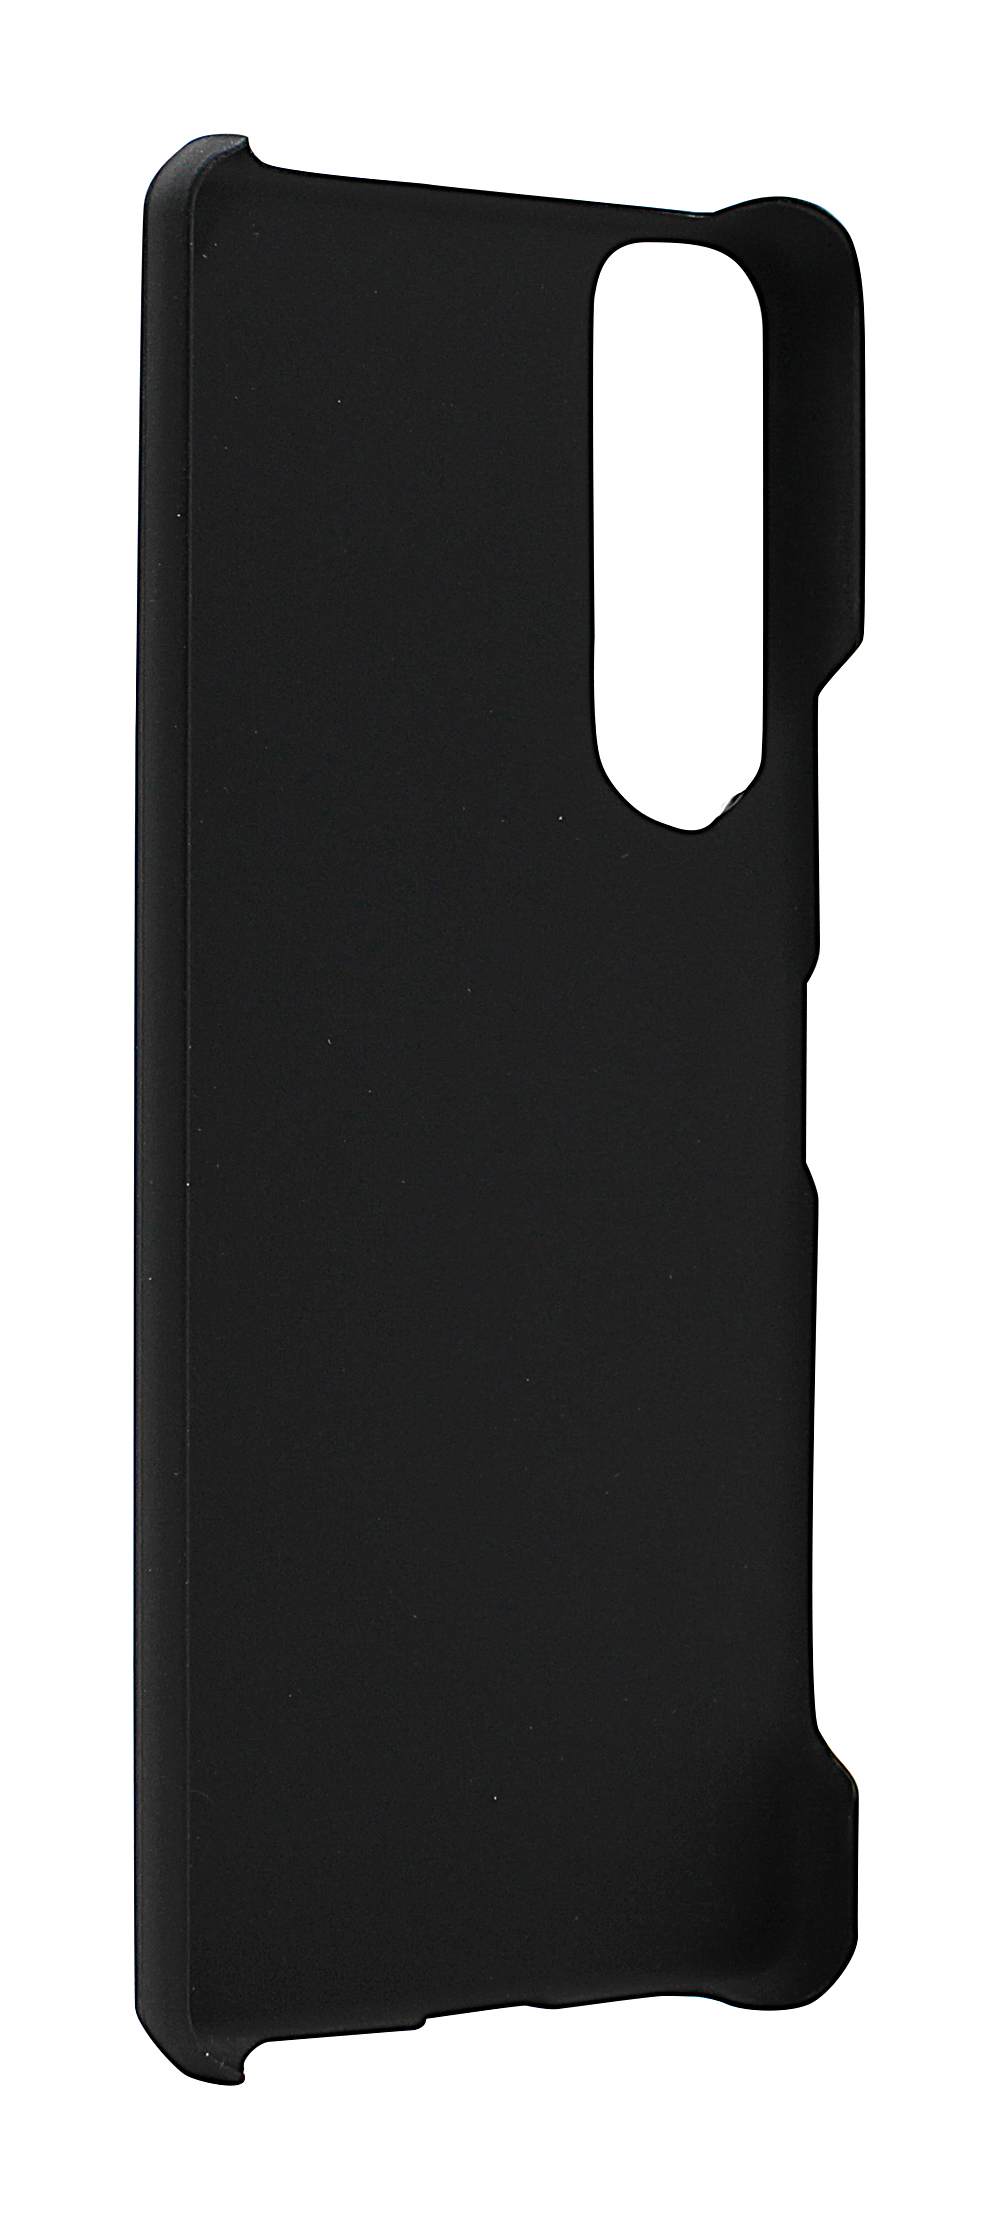 CoverInSkimblocker XL Magnet Fodral Sony Xperia 5 III (XQ-BQ52)